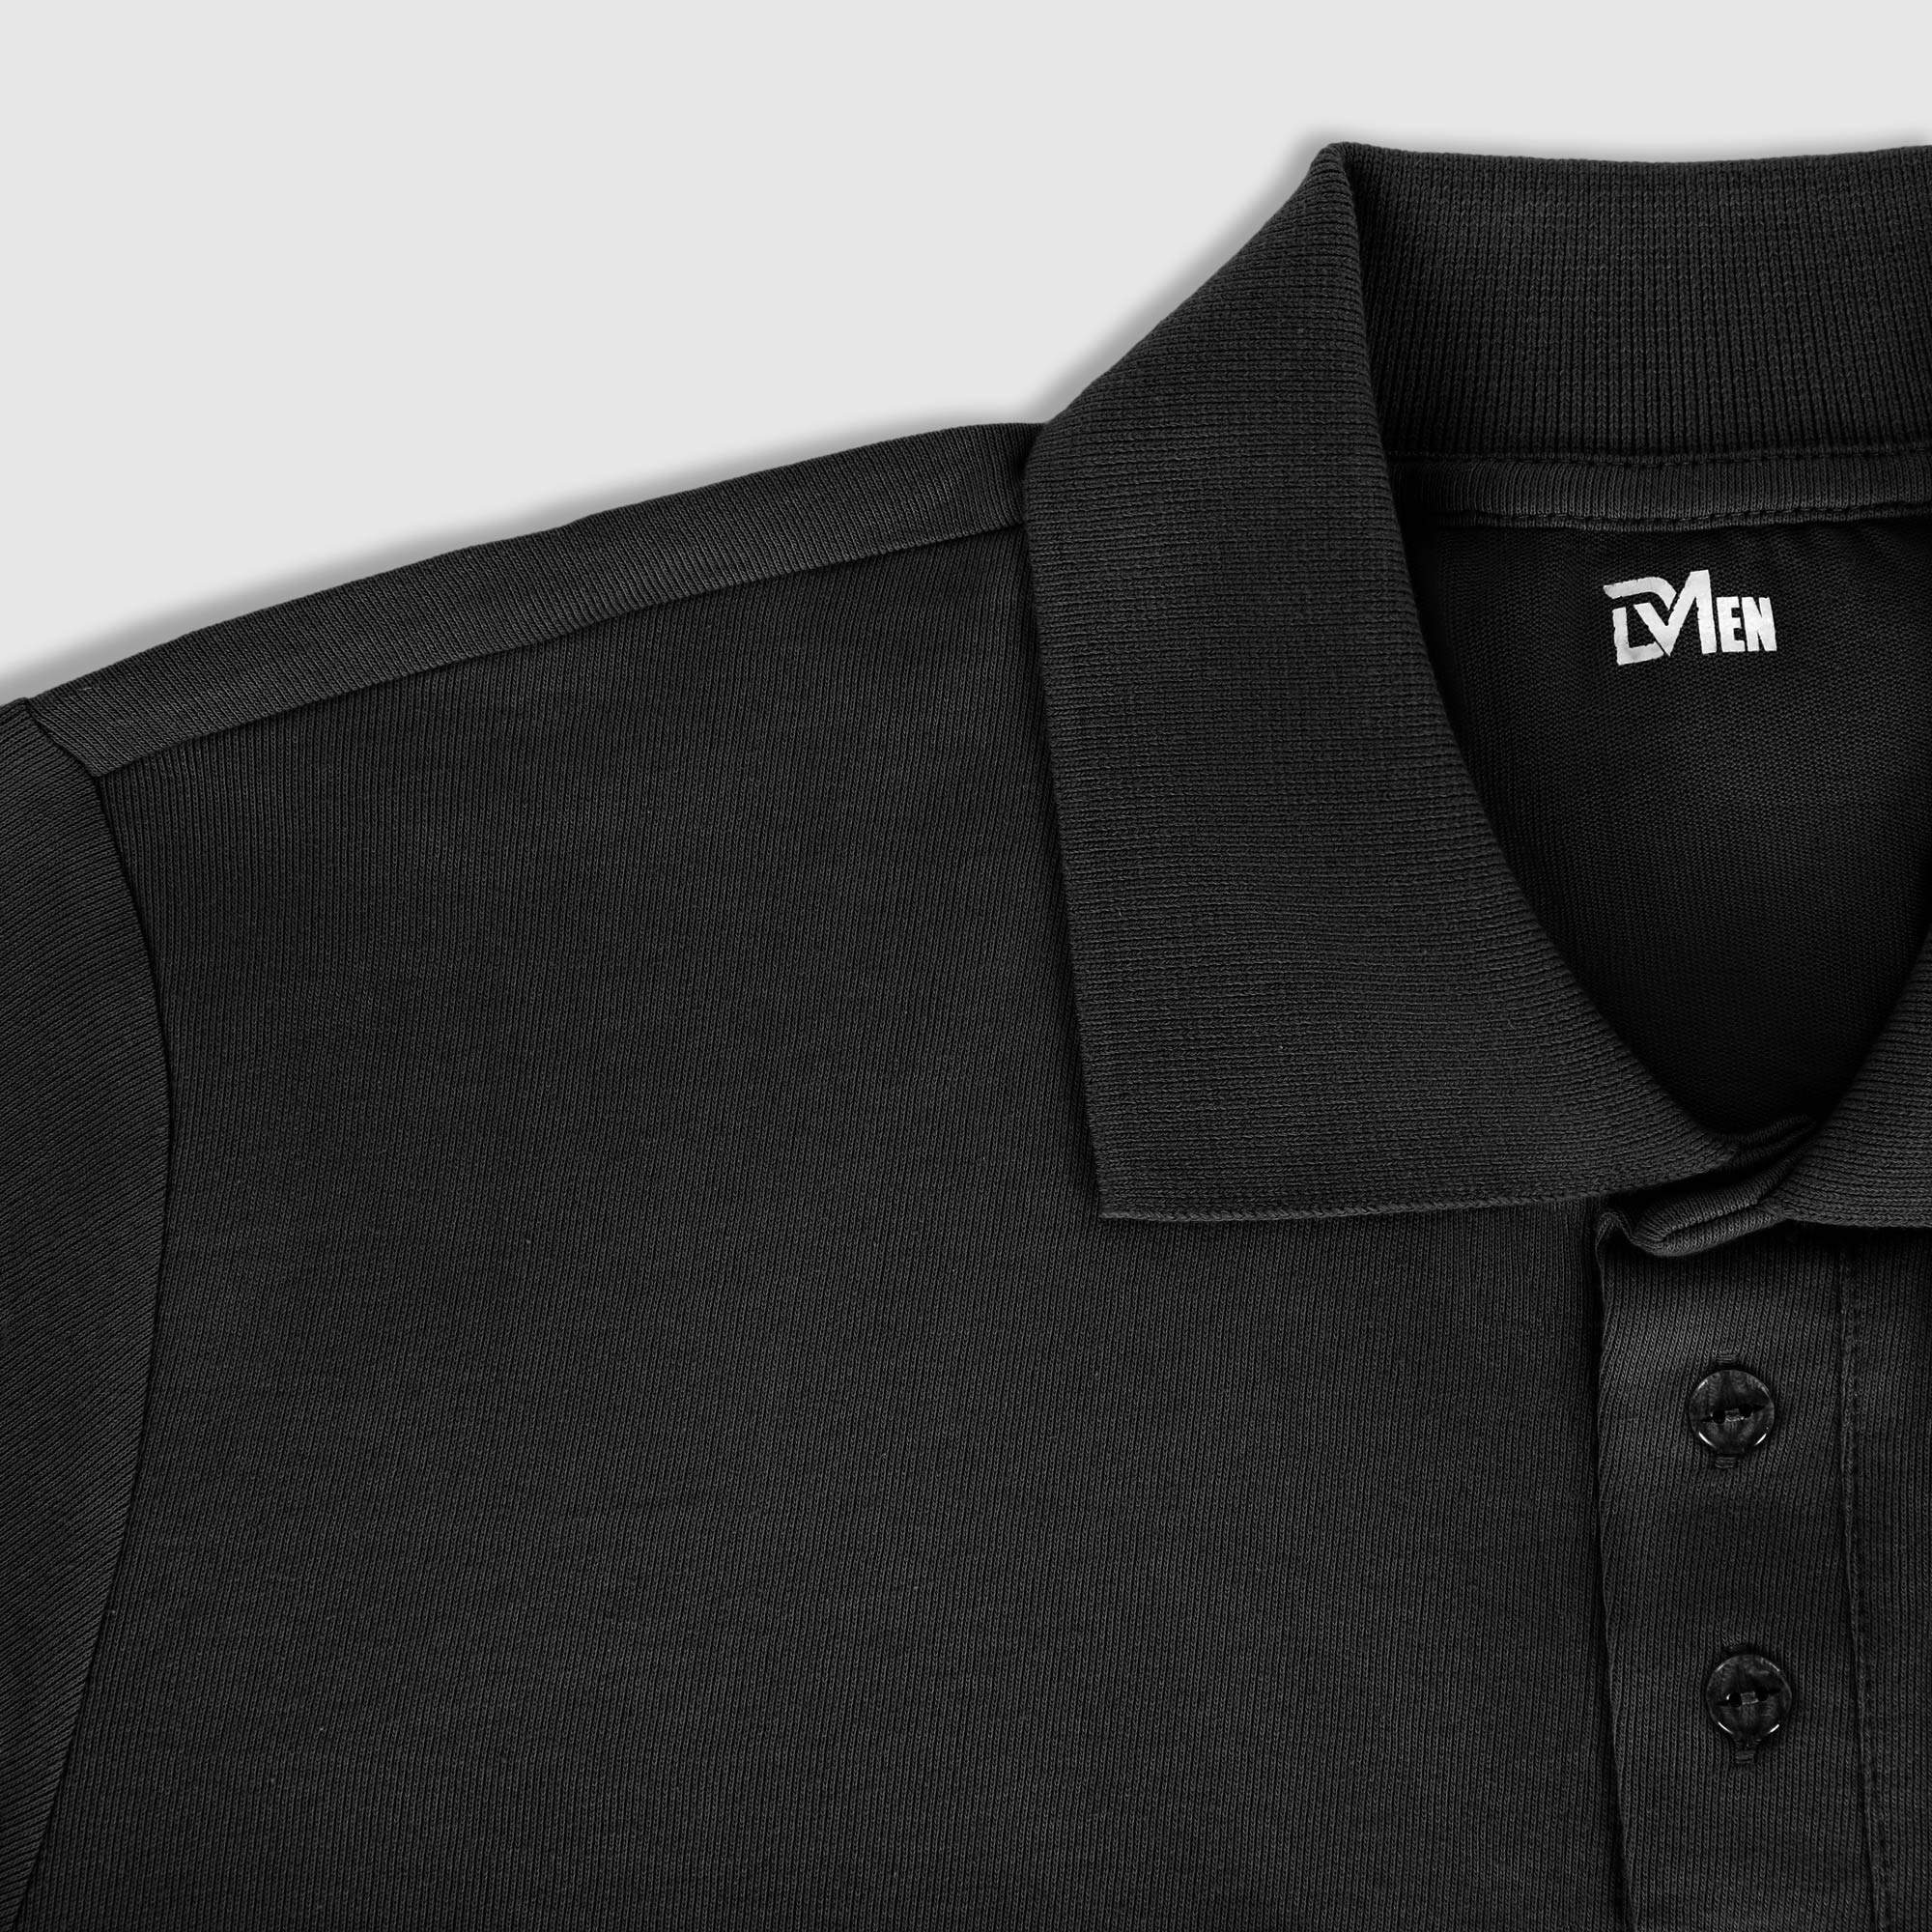 Рубашка мужская Diva Teks поло черная, цвет черный, размер M - фото 3